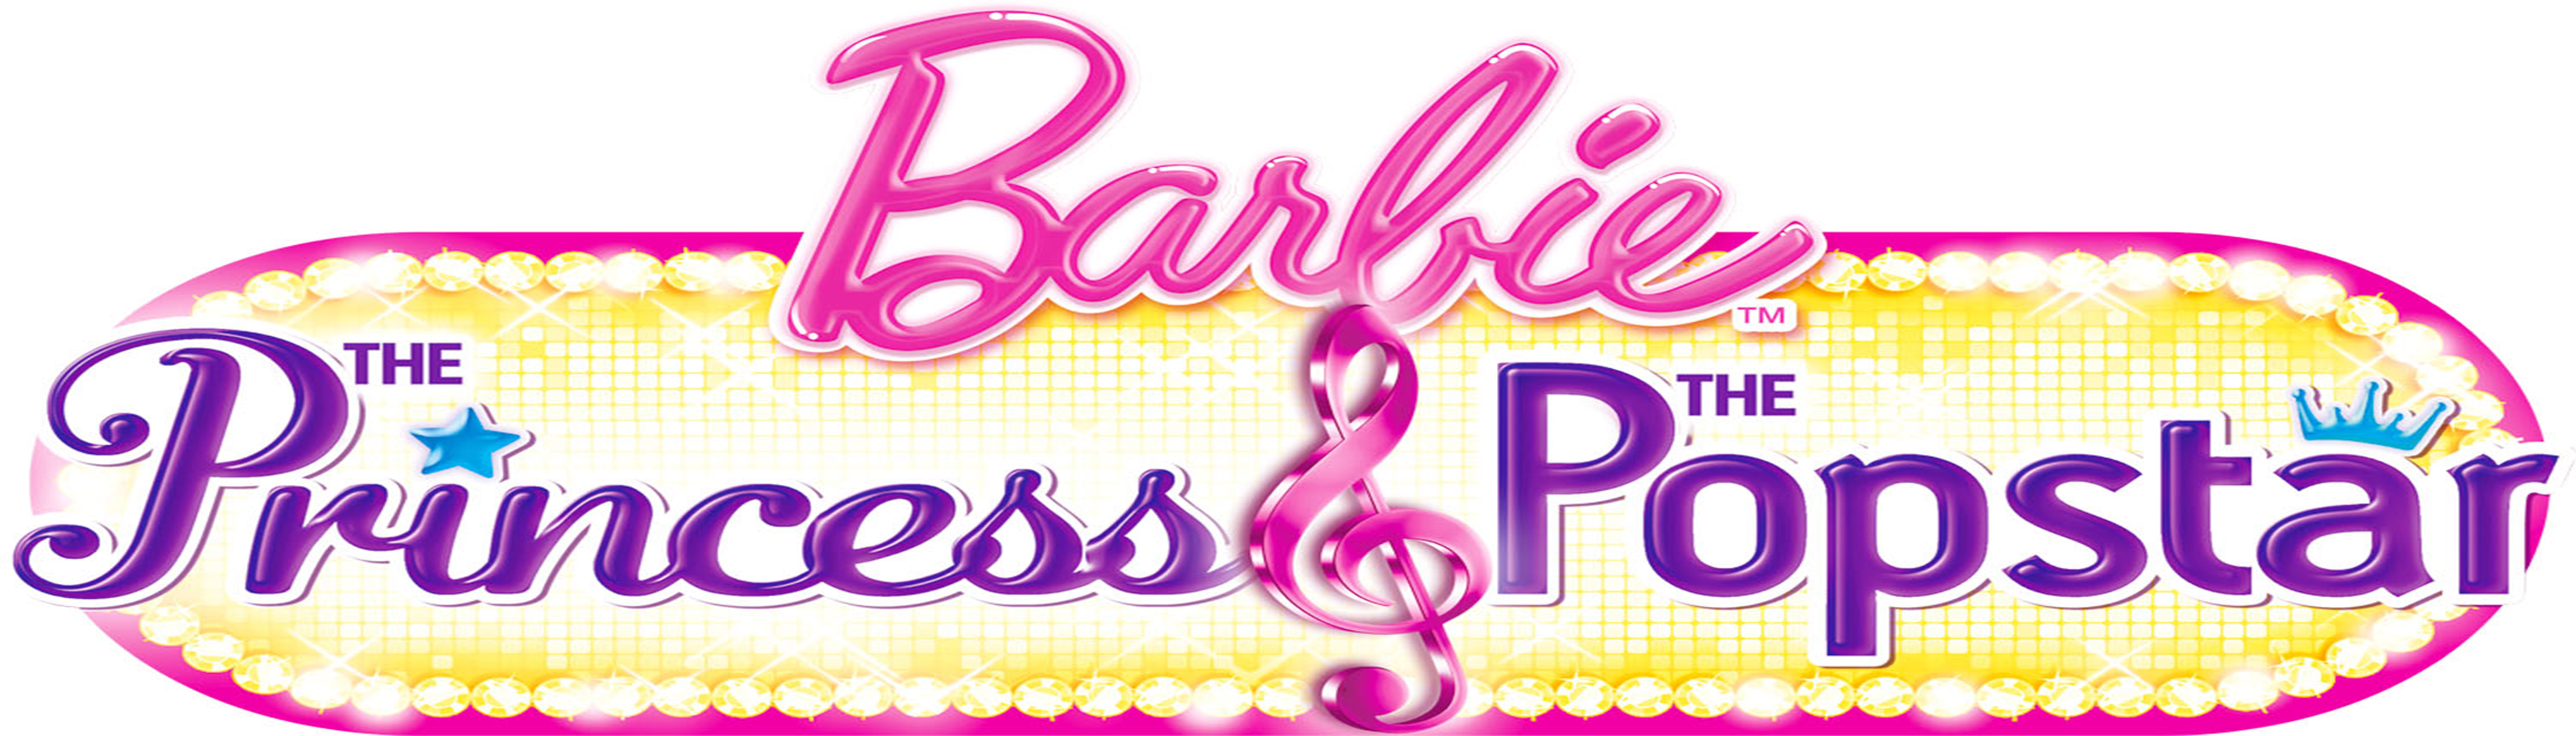 دانلود انیمیشن کارتونی Barbie the Popstar با دوبله گلوری